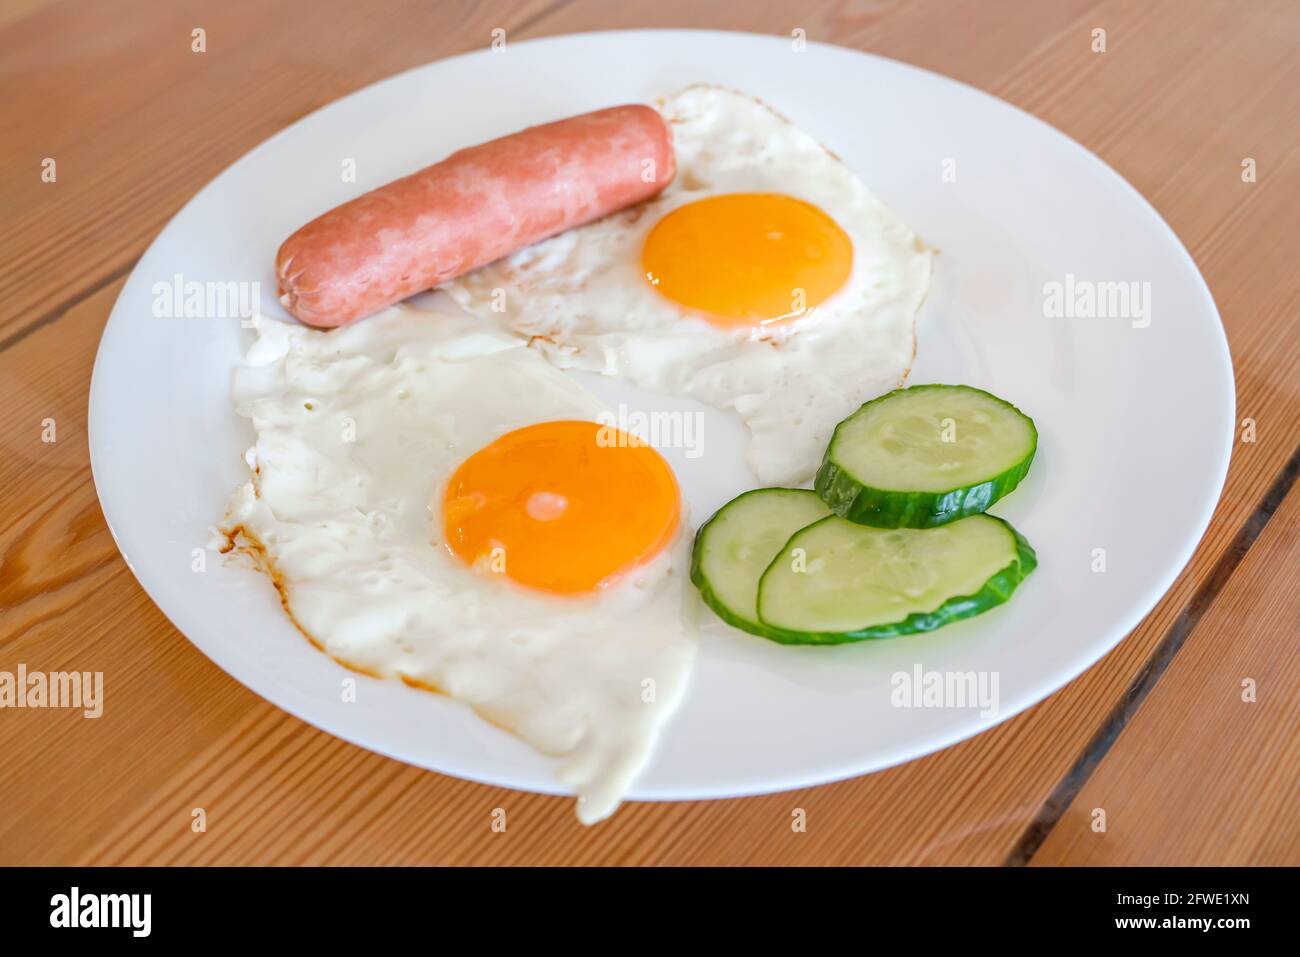 Spiegeleier aus zwei Eiern mit Gurken und Wurst zum Frühstück. Spiegeleier, Sonnenseite auf einem Teller. Gesundes Lebensmittelkonzept. Stockfoto